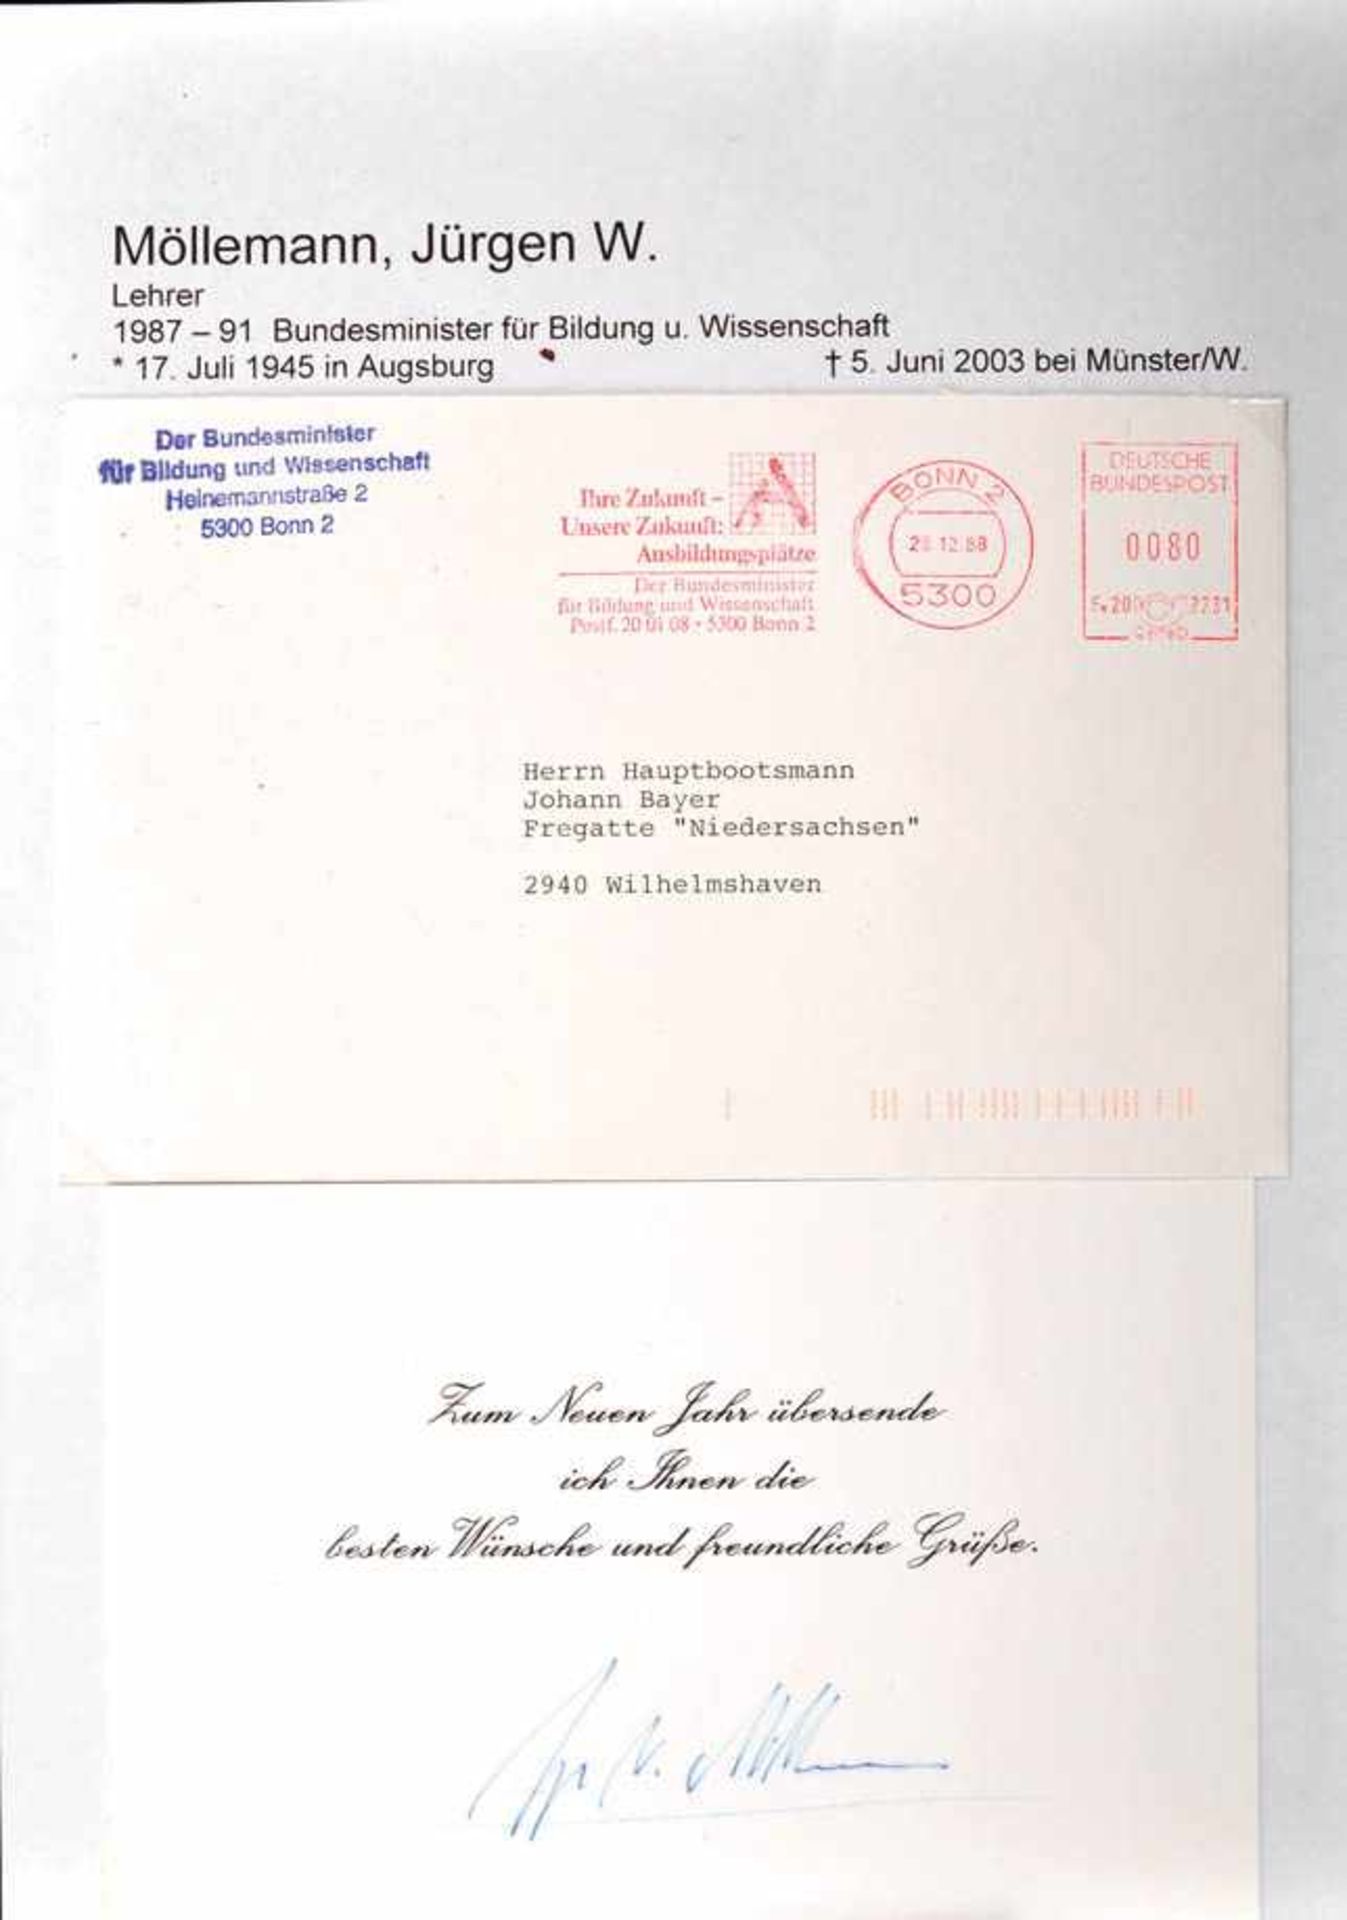 MÖLLEMANN, JÜRGEN W., (1945-2003), Bundesminister für Wirtschaft u. Bildung, FDP-